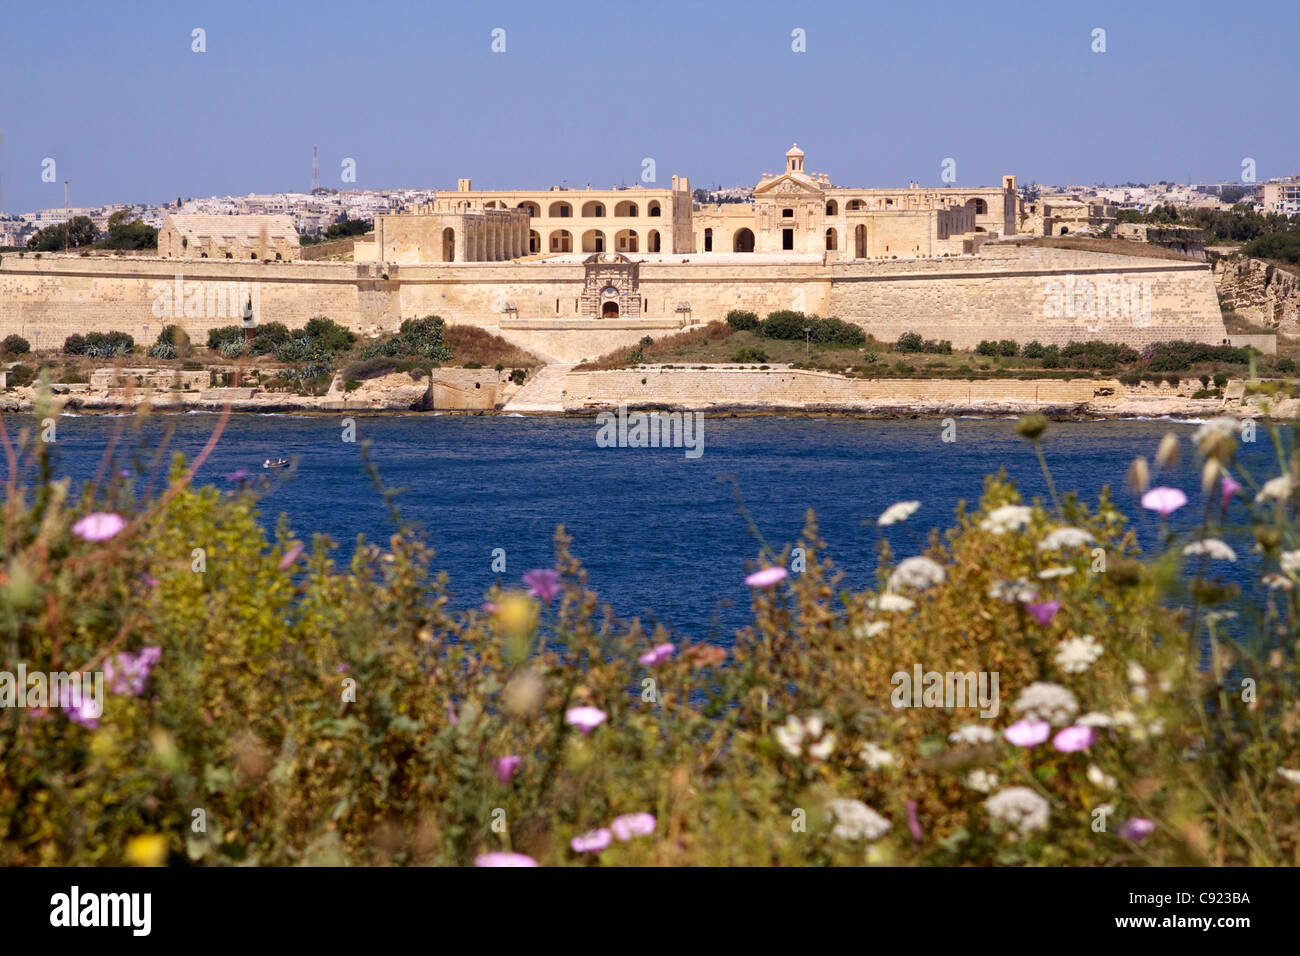 Fort Manoel built in 1726 on Manoel Island in Marsamxett Harbour, Valletta. Stock Photo